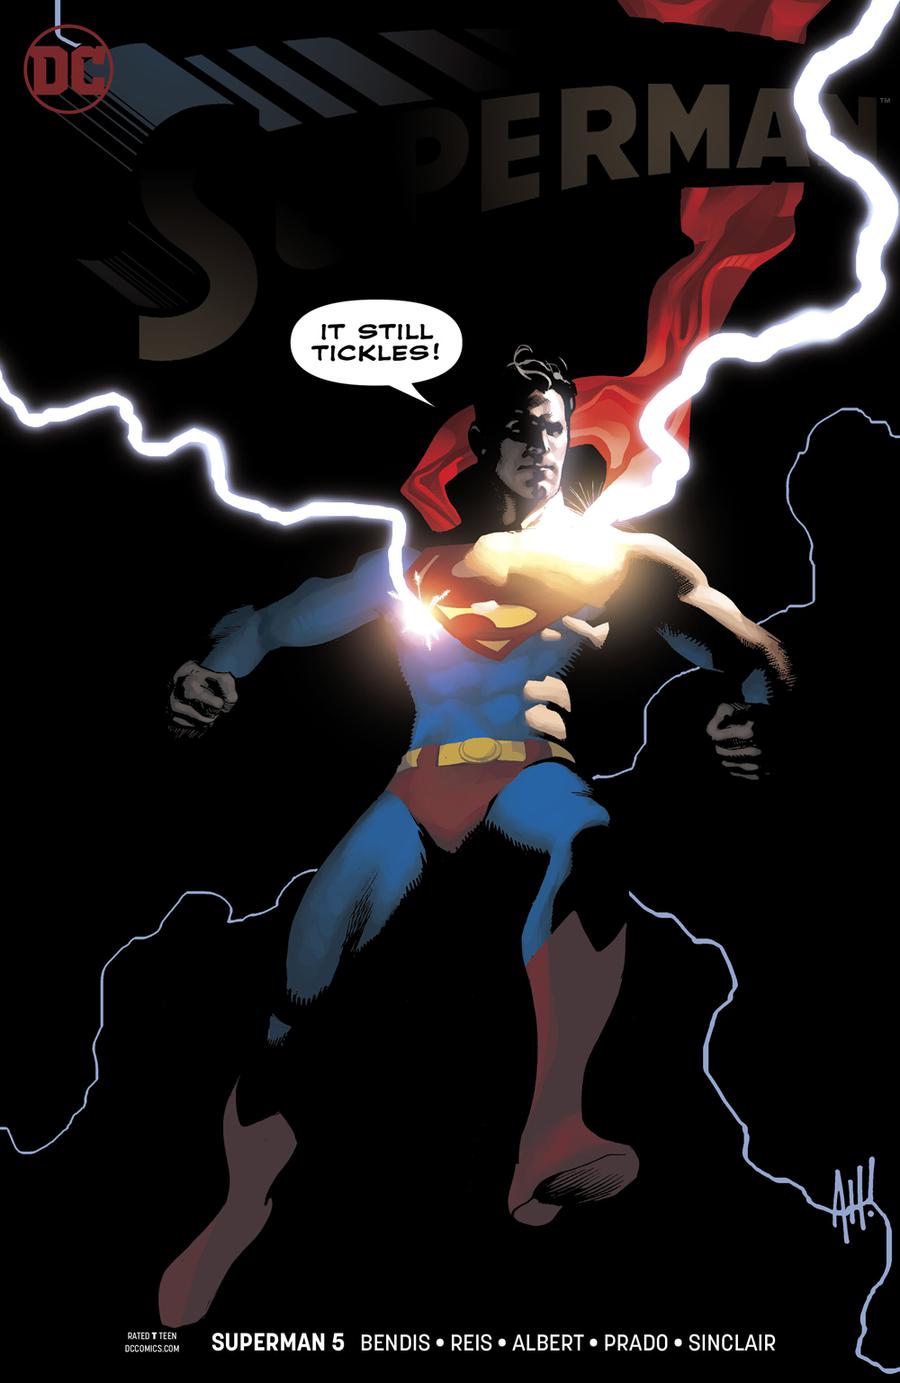 Superman vol 5 issue 5 adam hughes cover